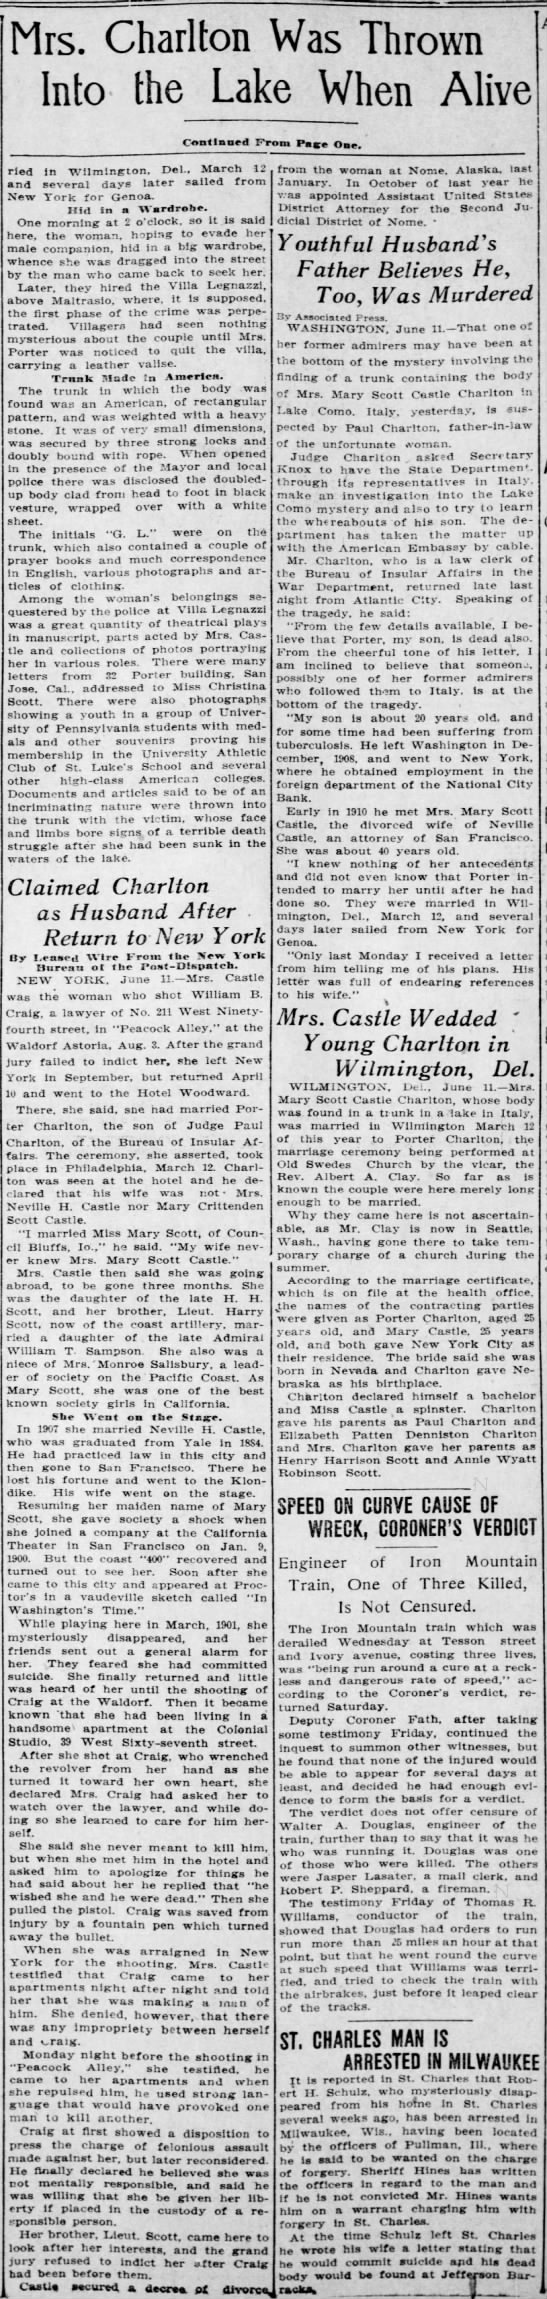 St. Louis Post-Dispatch June 11, 1910 - Page 2 - 